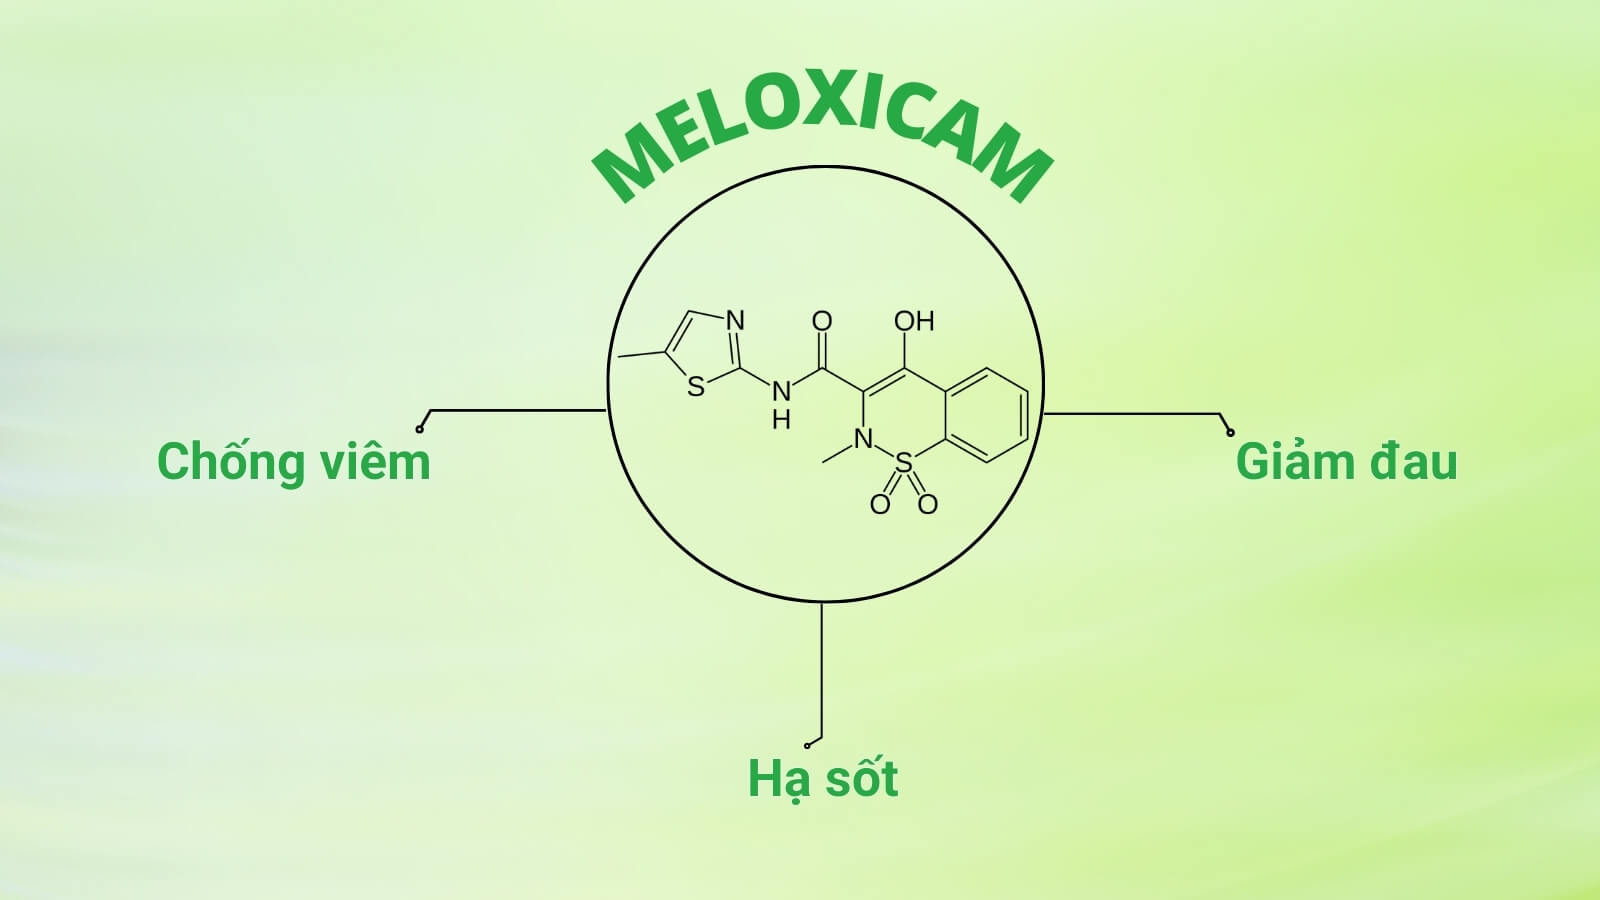 Meloxicam là một loại hoạt chất chống viêm không steroid (NSAID)